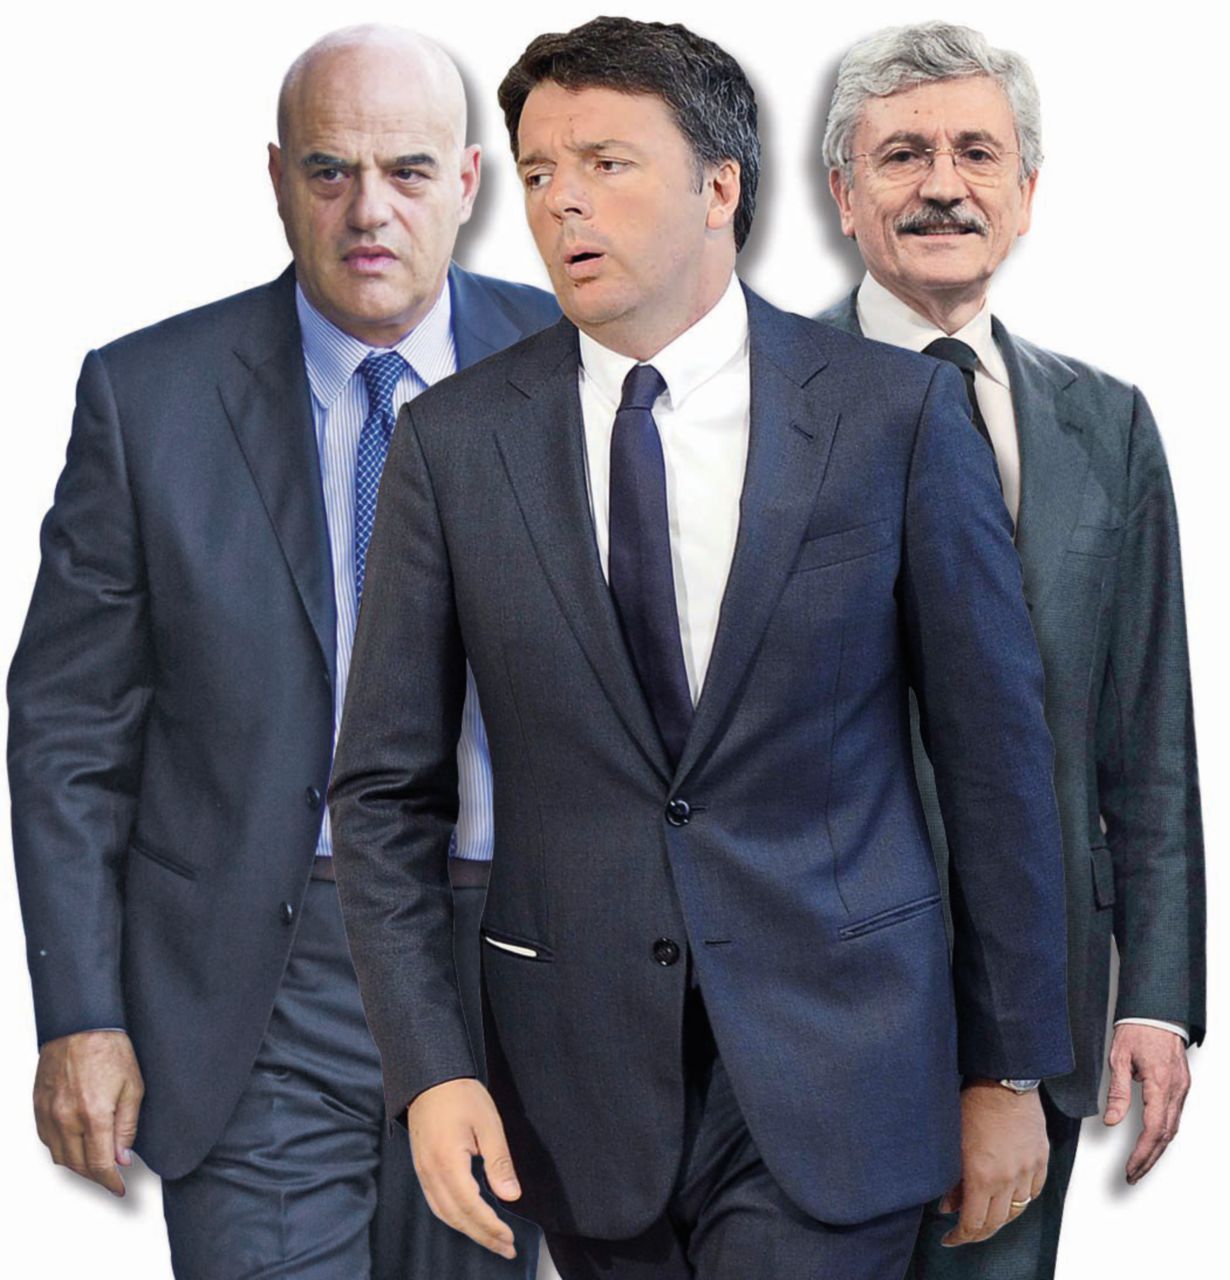 Copertina di Eni, il complotto c’è stato pro o contro Renzi